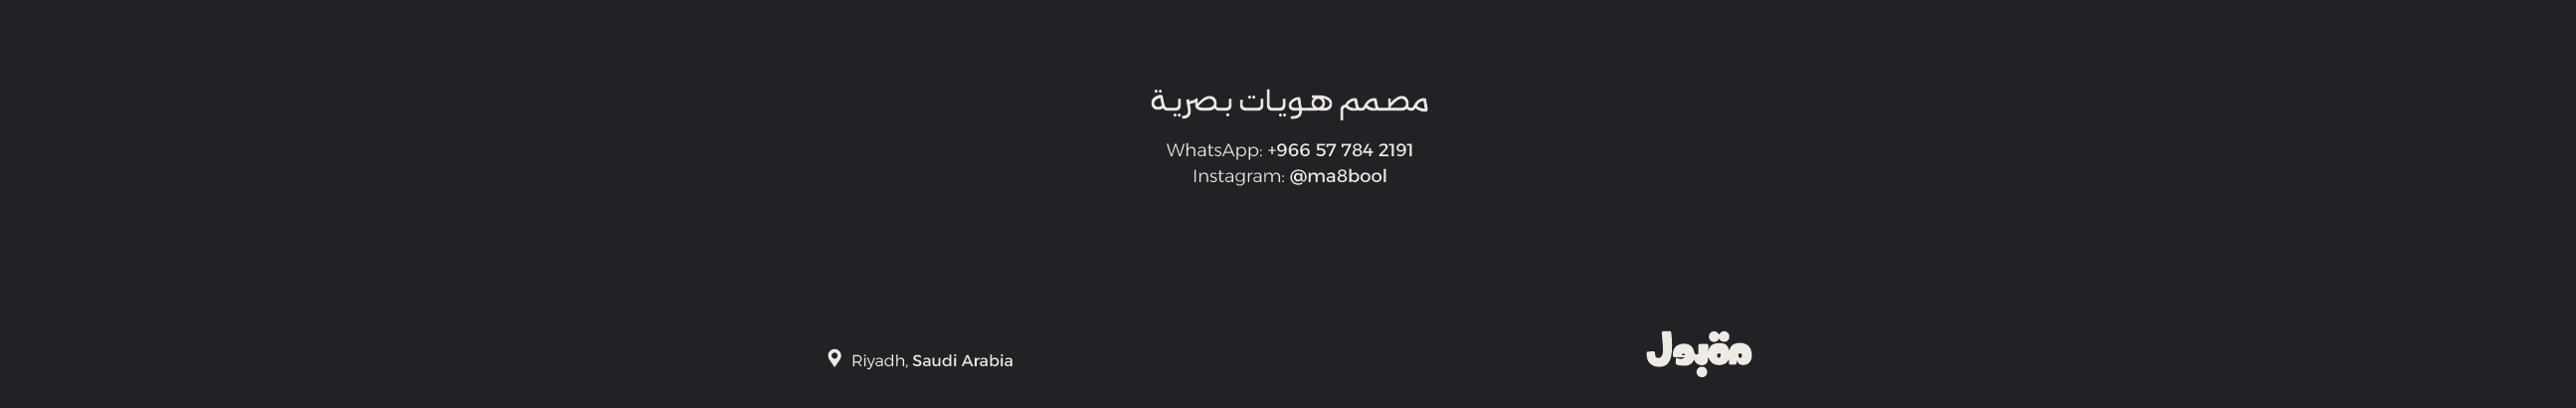 Banner del profilo di AbdulElah Maqbool